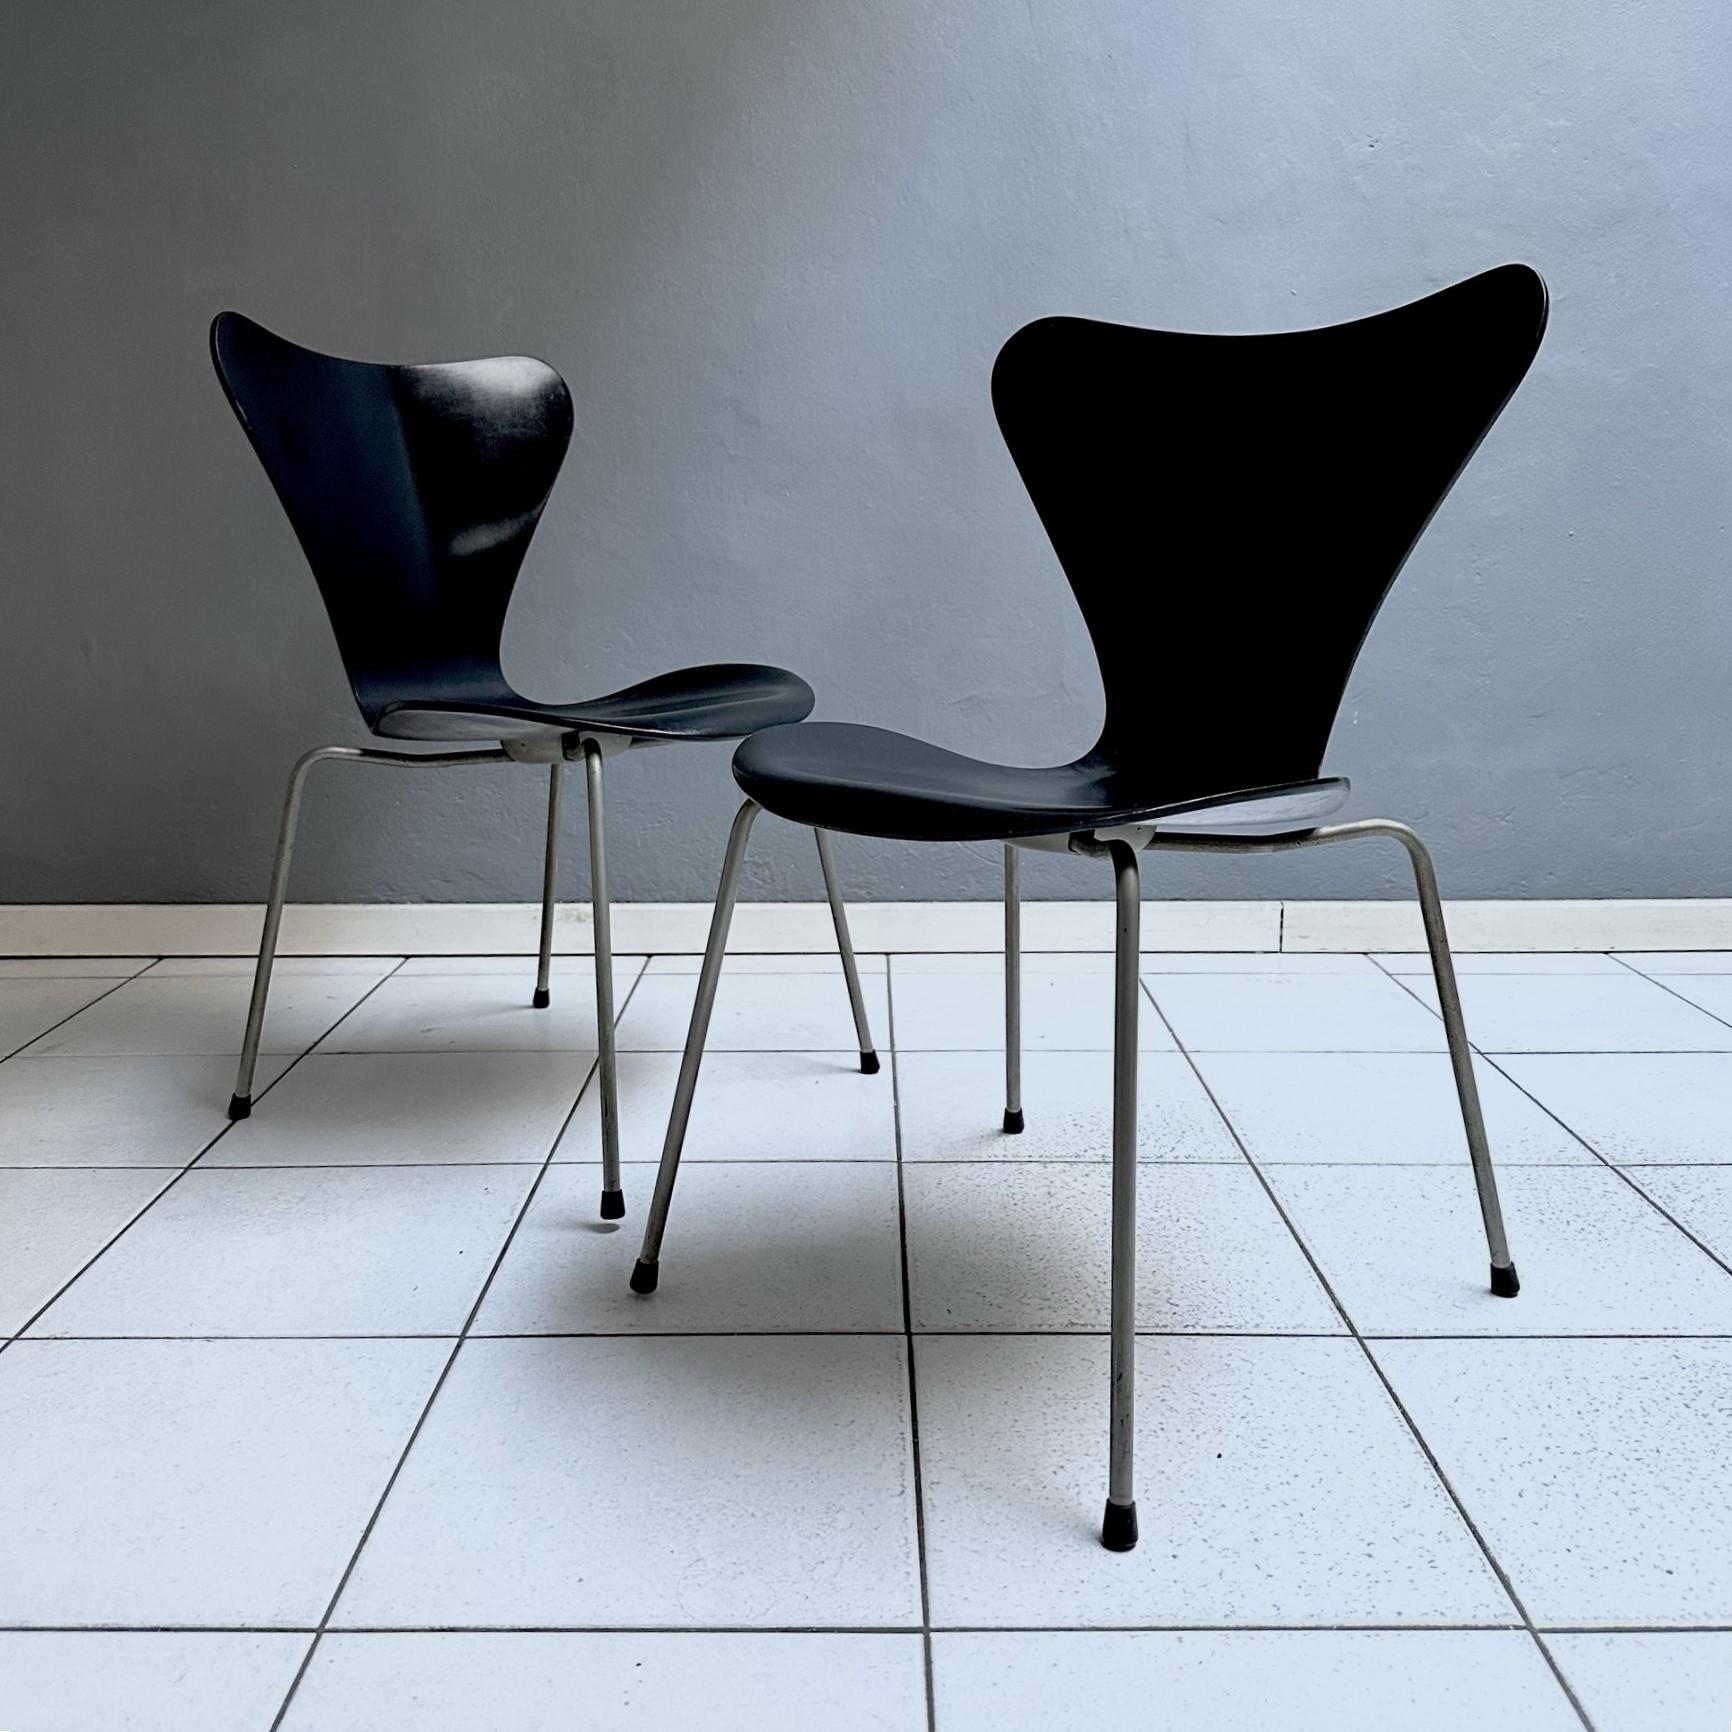 Paire de chaises mod. 3107 conçues par Arne Jacobsen pour le fabricant de meubles danois Fritz Hansen en 1973.
La coque de l'assise, laquée en noir, est en contreplaqué, structure en métal chromé.
La marque d'authenticité est imprimée sous le siège.